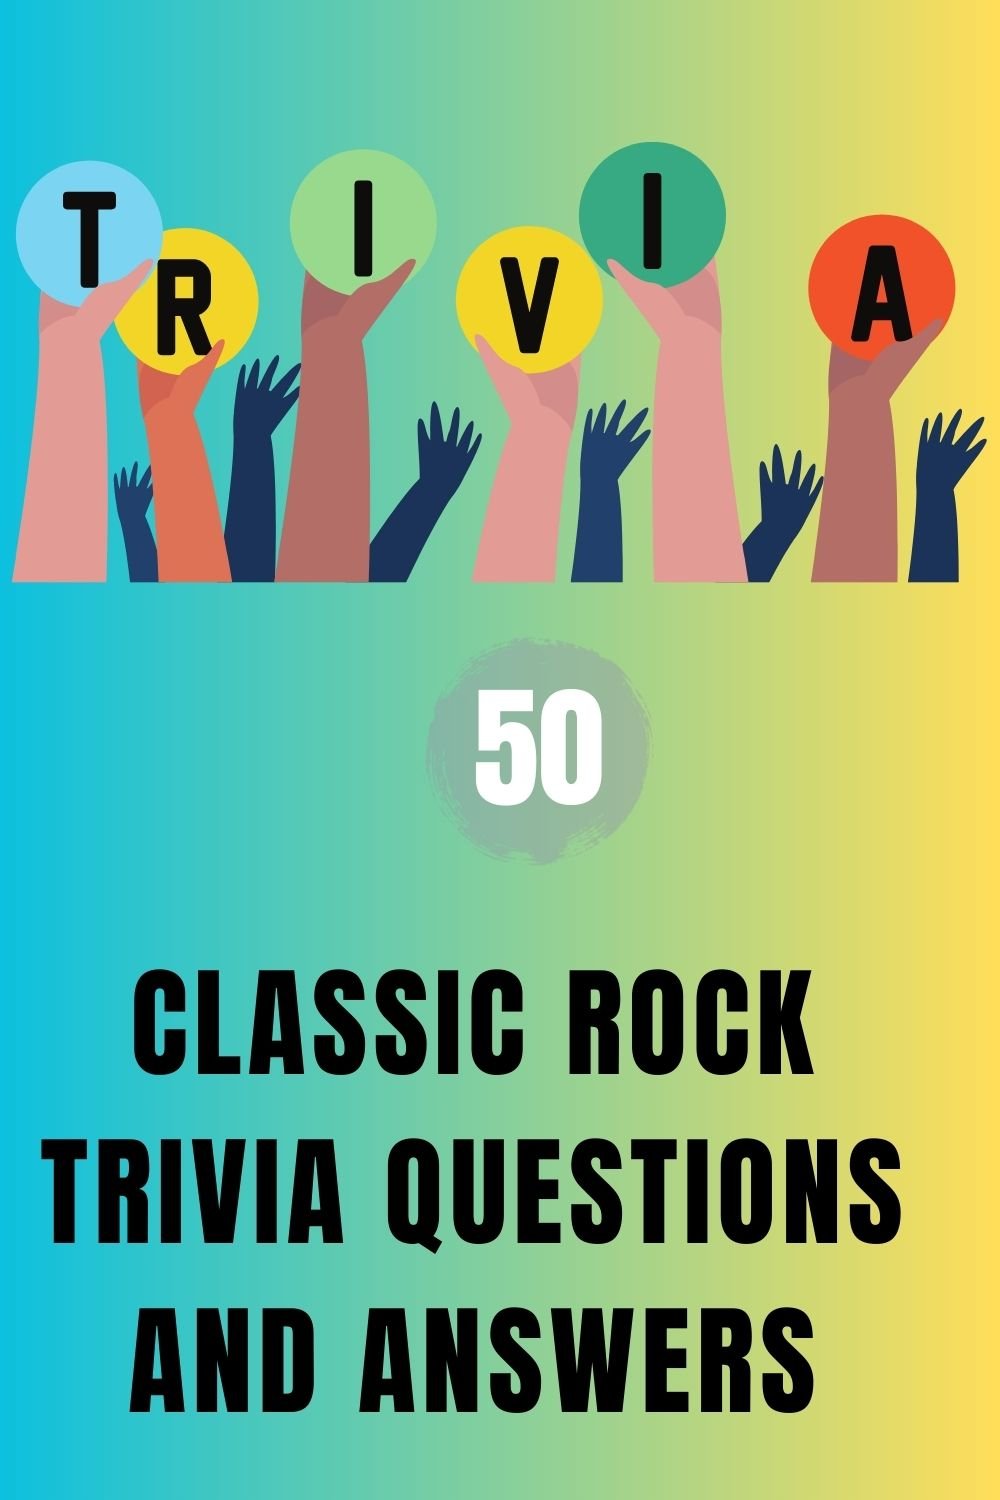 Classic Rock Trivia 1 